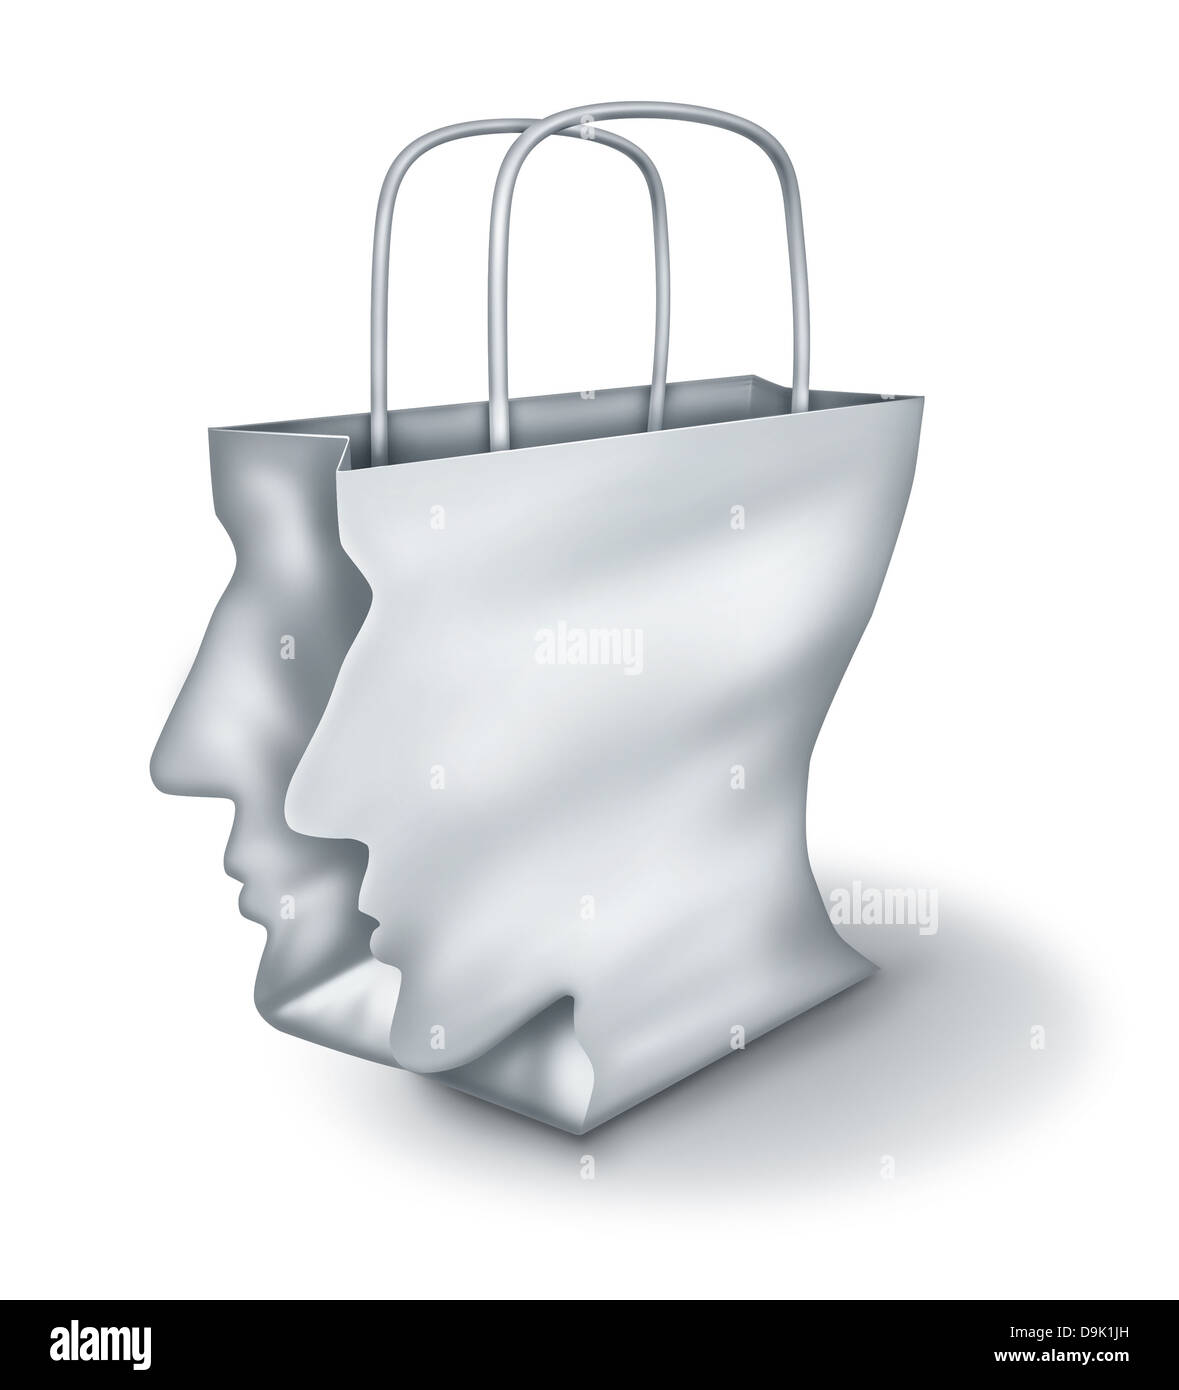 Solutions de magasinage intelligentes et d'achats comme un concept de bonnes affaires avec un sac en papier blanc en forme de tête humaine sur un fond blanc Banque D'Images